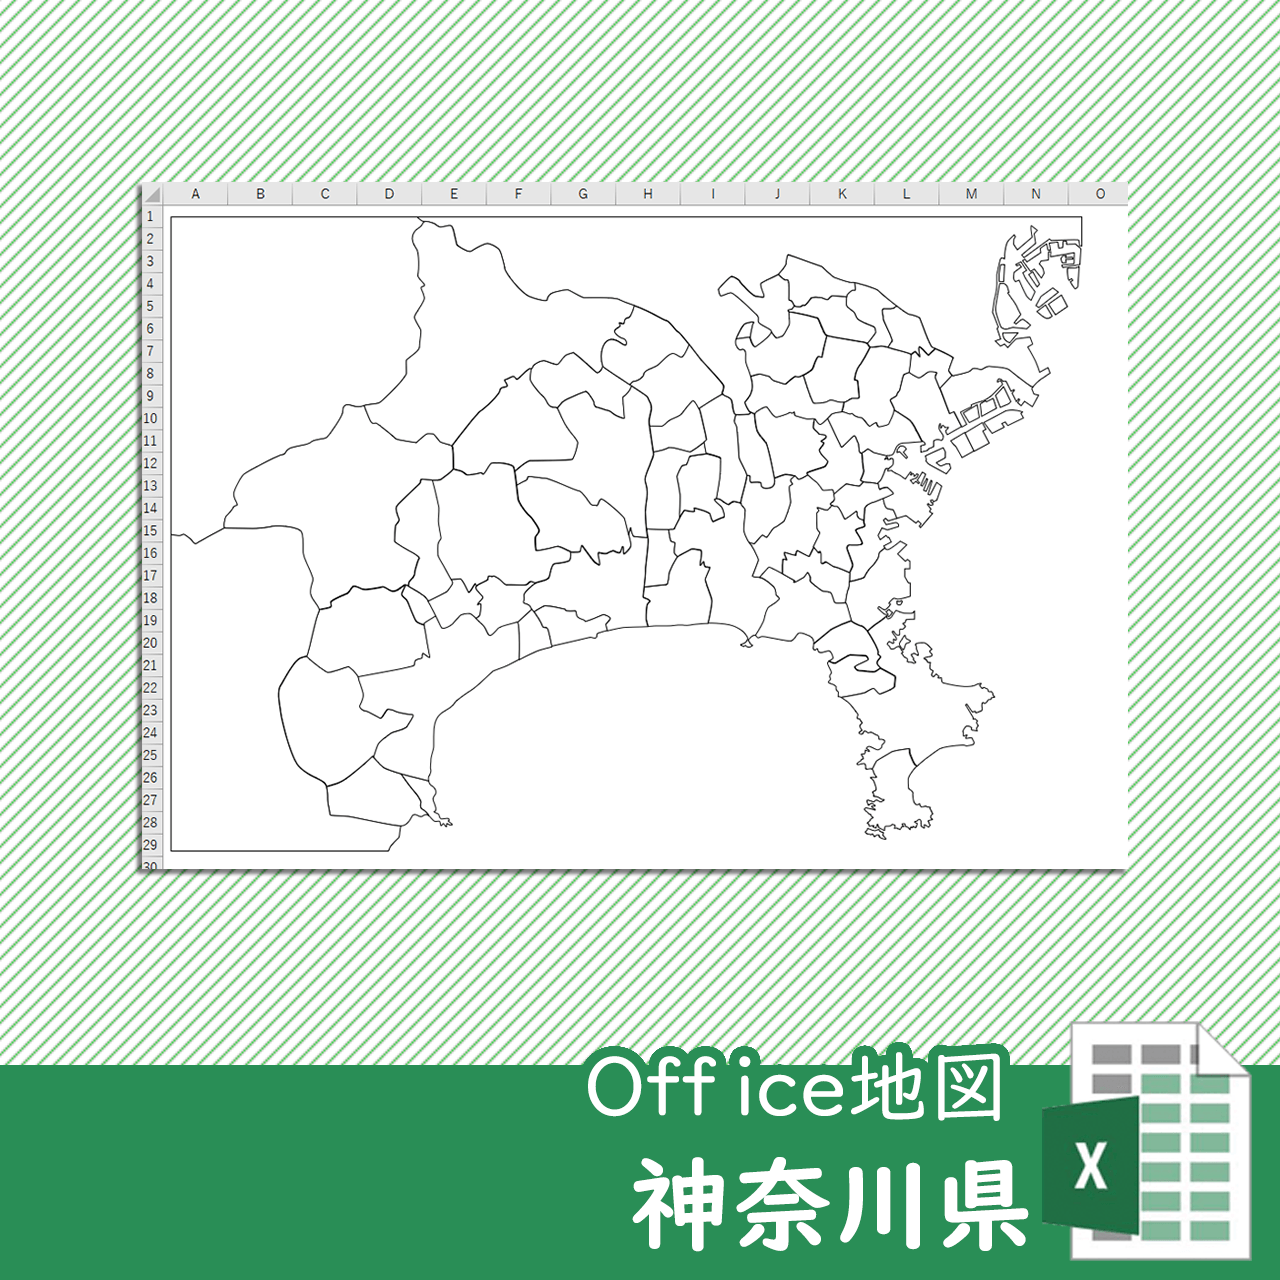 神奈川県のoffice地図